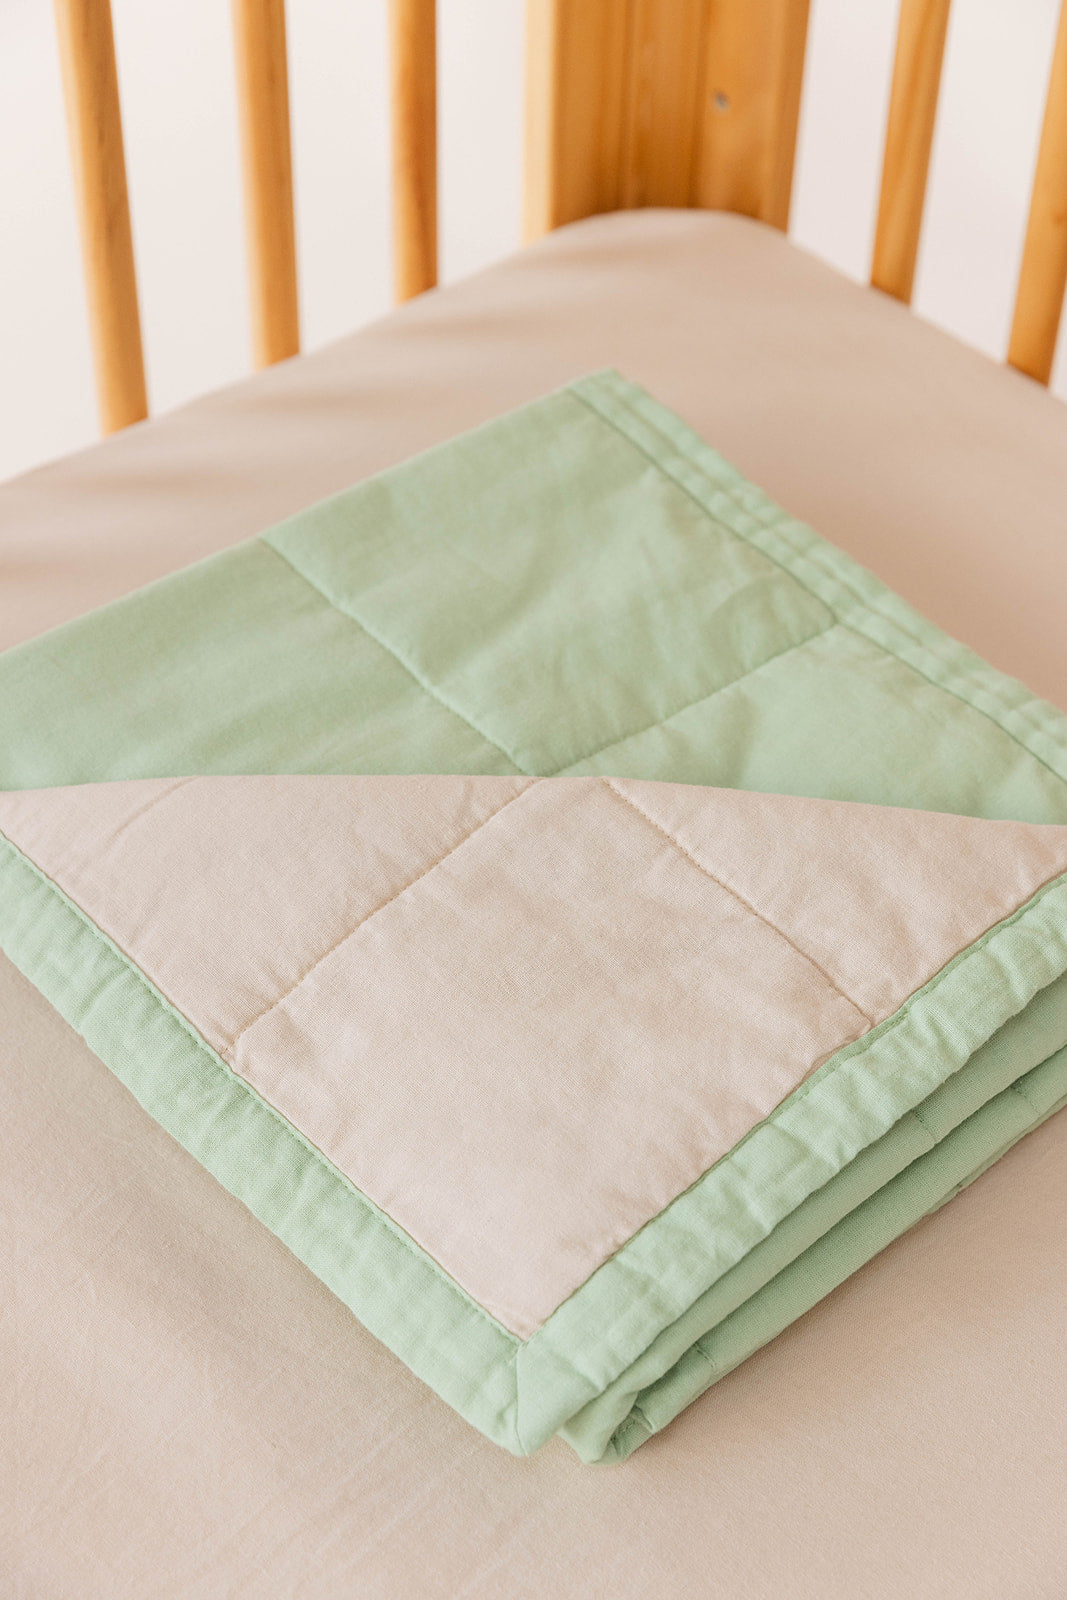 Alexandrine/Sparrow - Linen Quilted Blanket